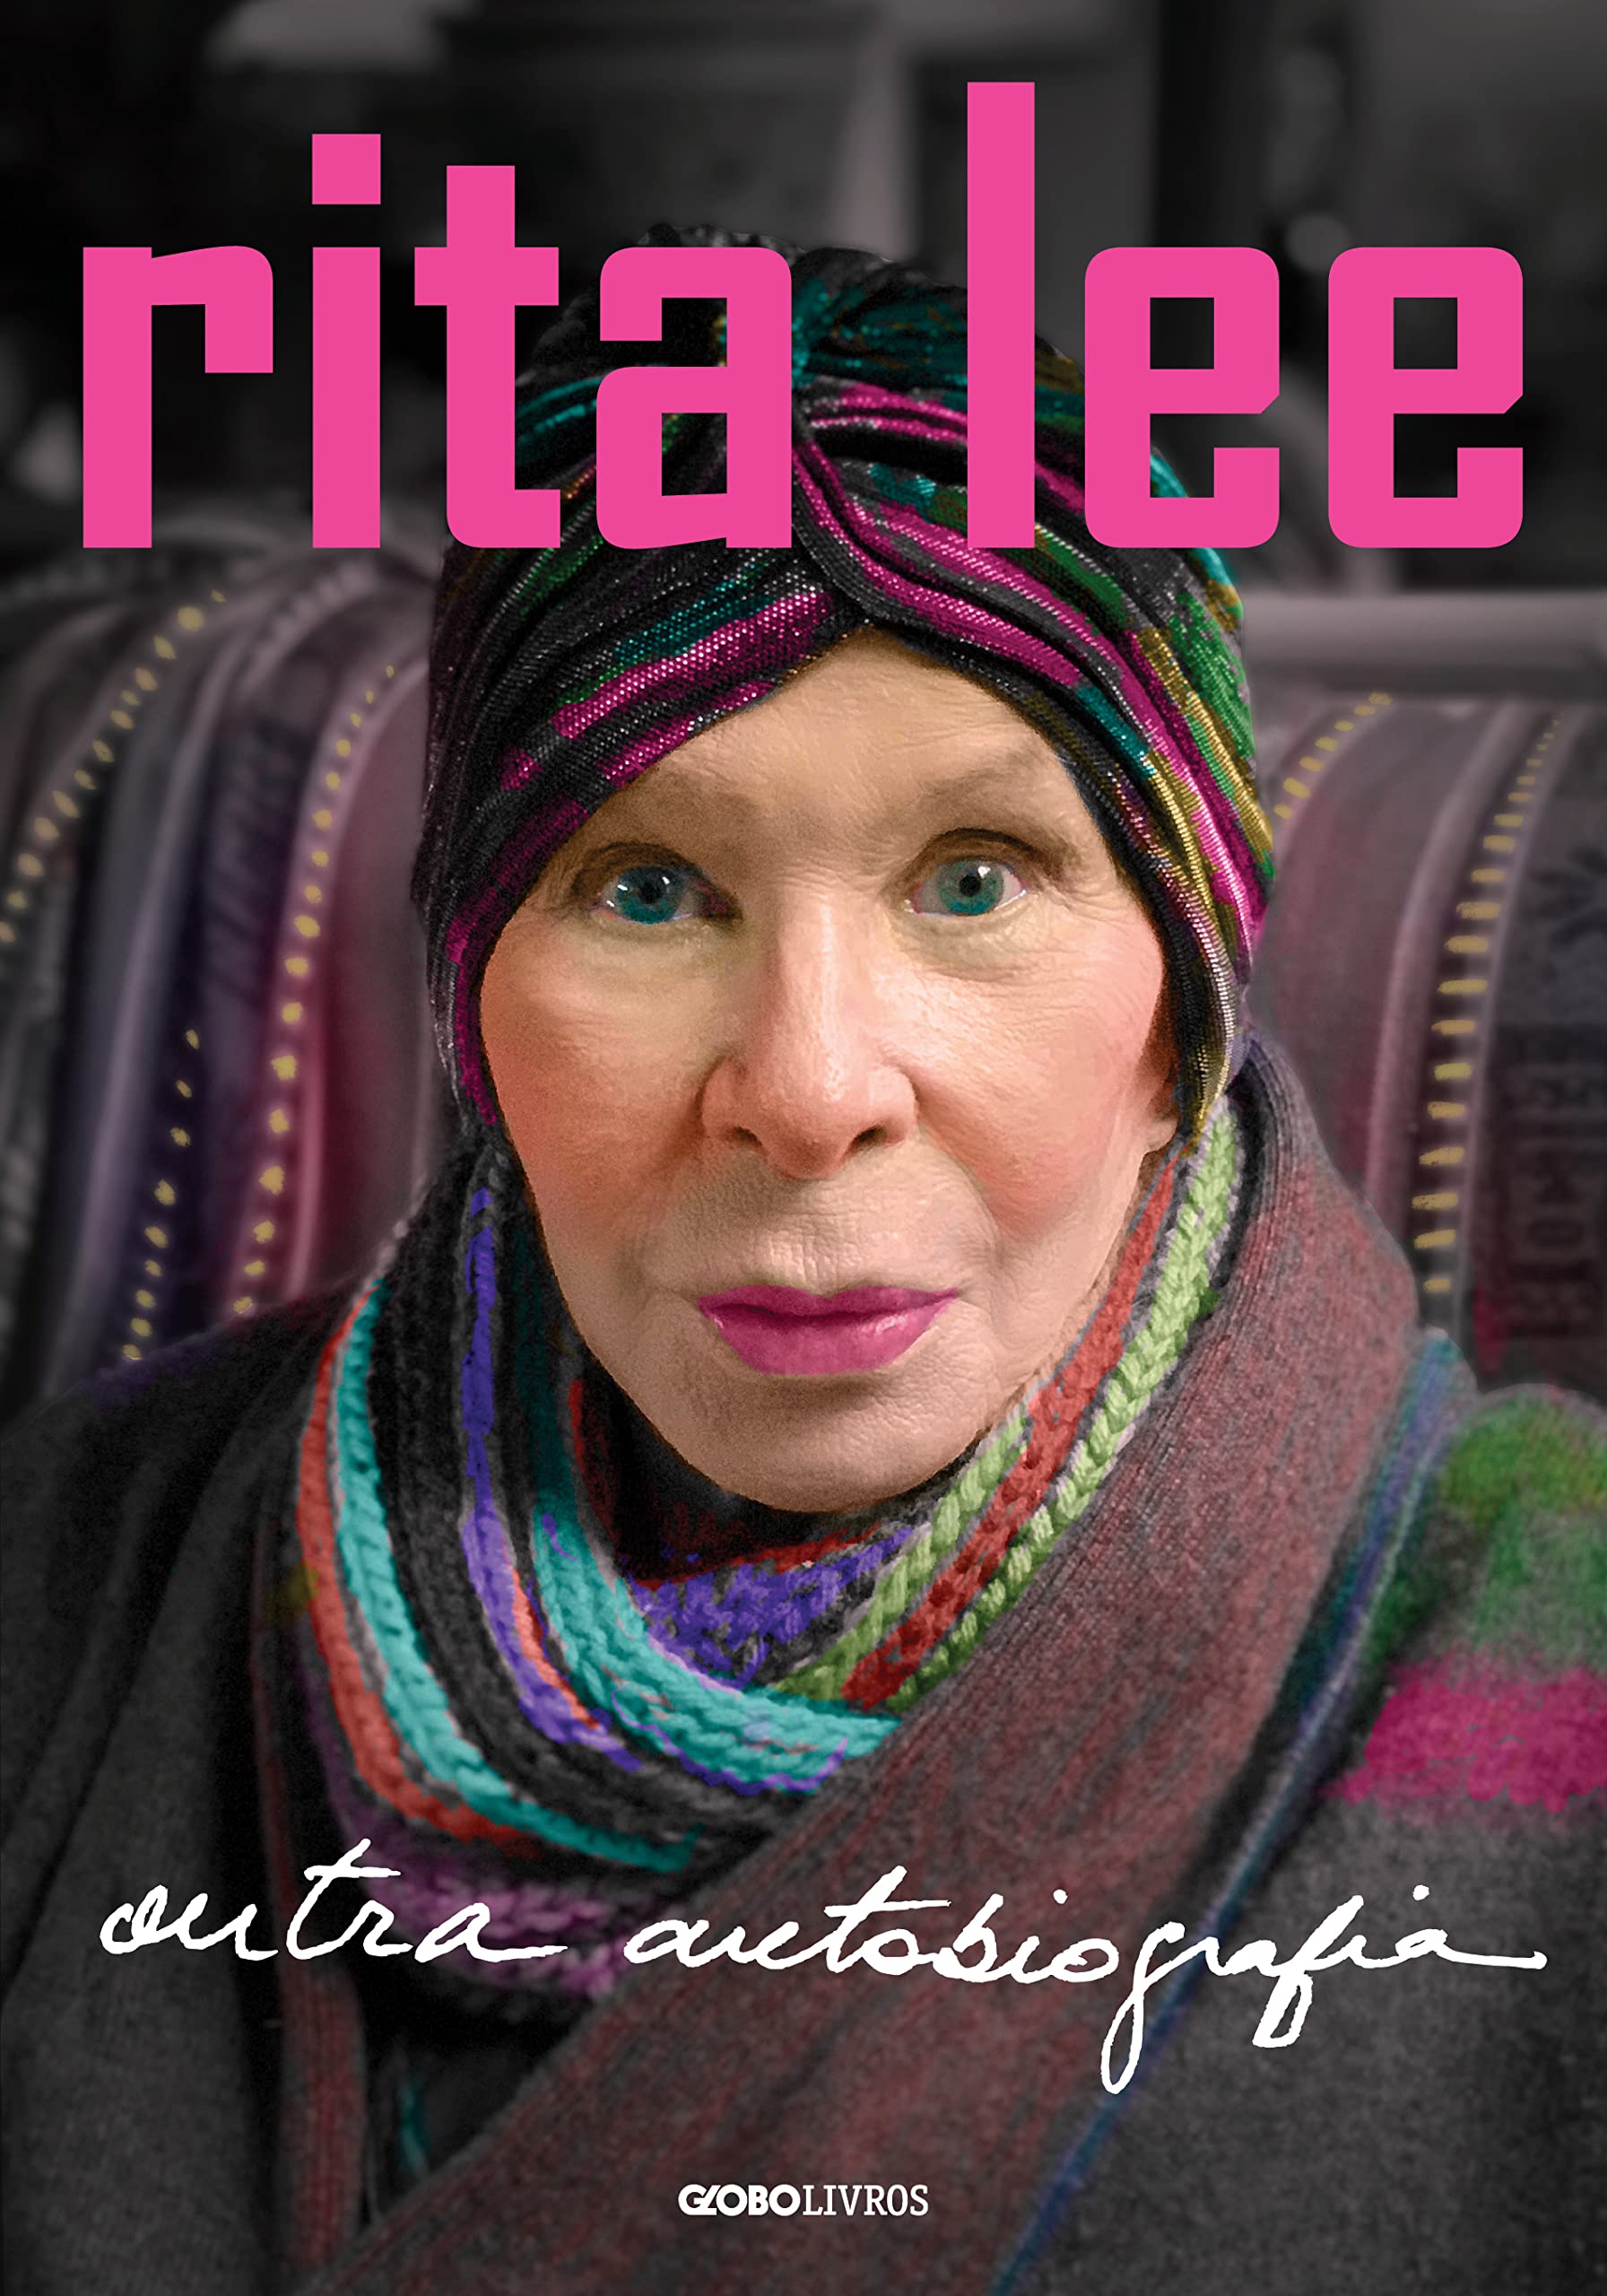 Rita Lee: Outra autobiografia (Portuguese Edition)